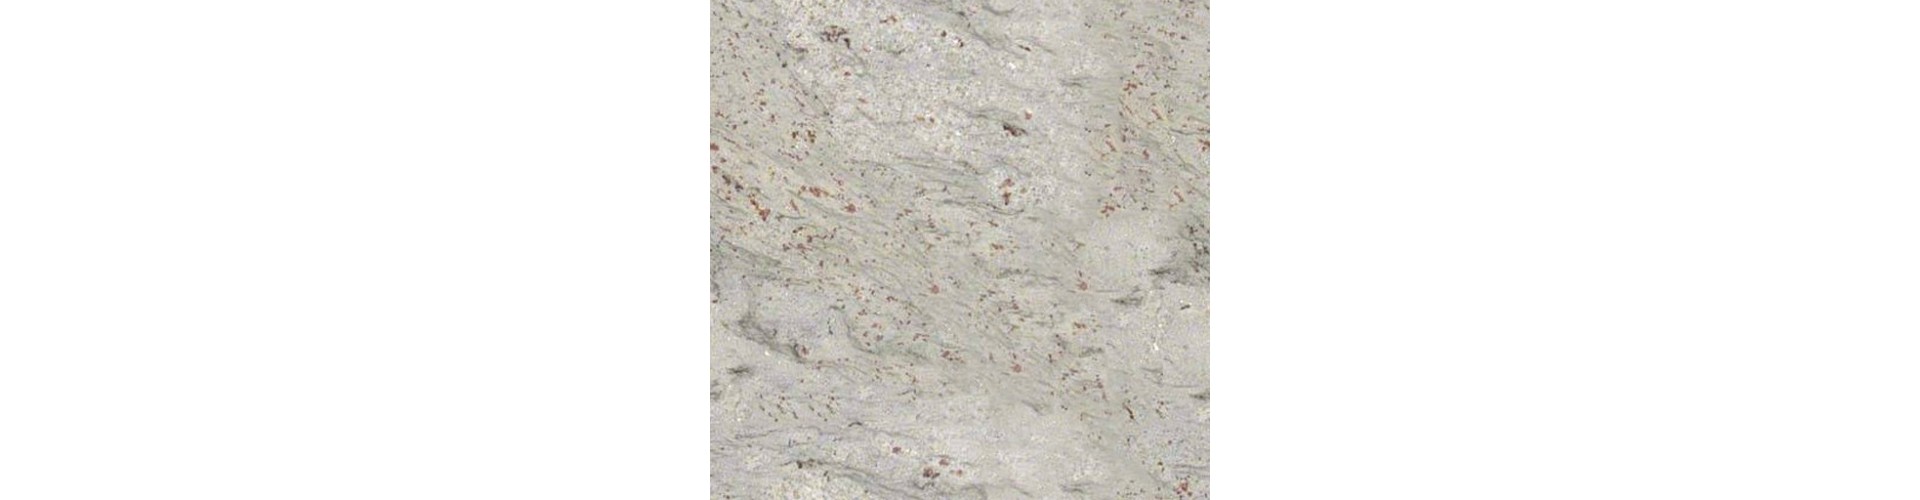 Granit | Schody, parapety blaty z granitu na wymiar